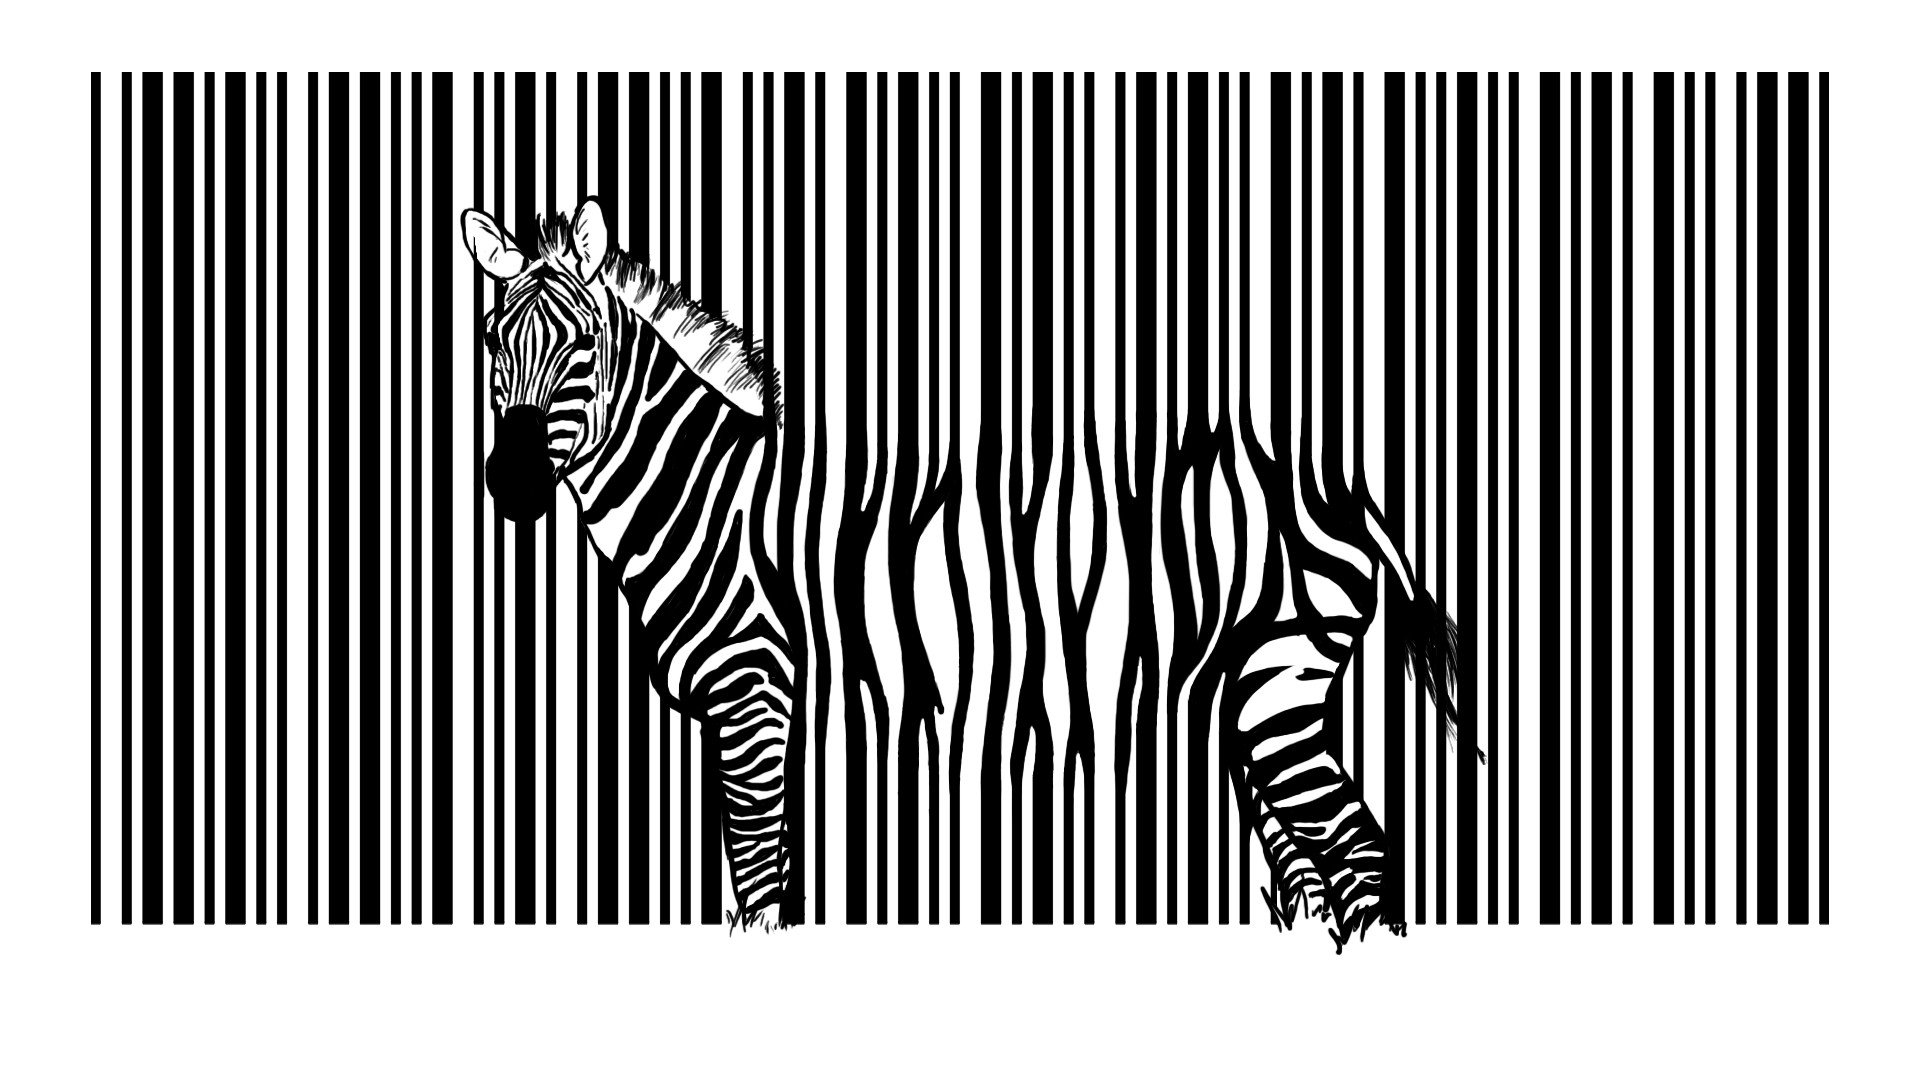 Зебра на полосатом фоне